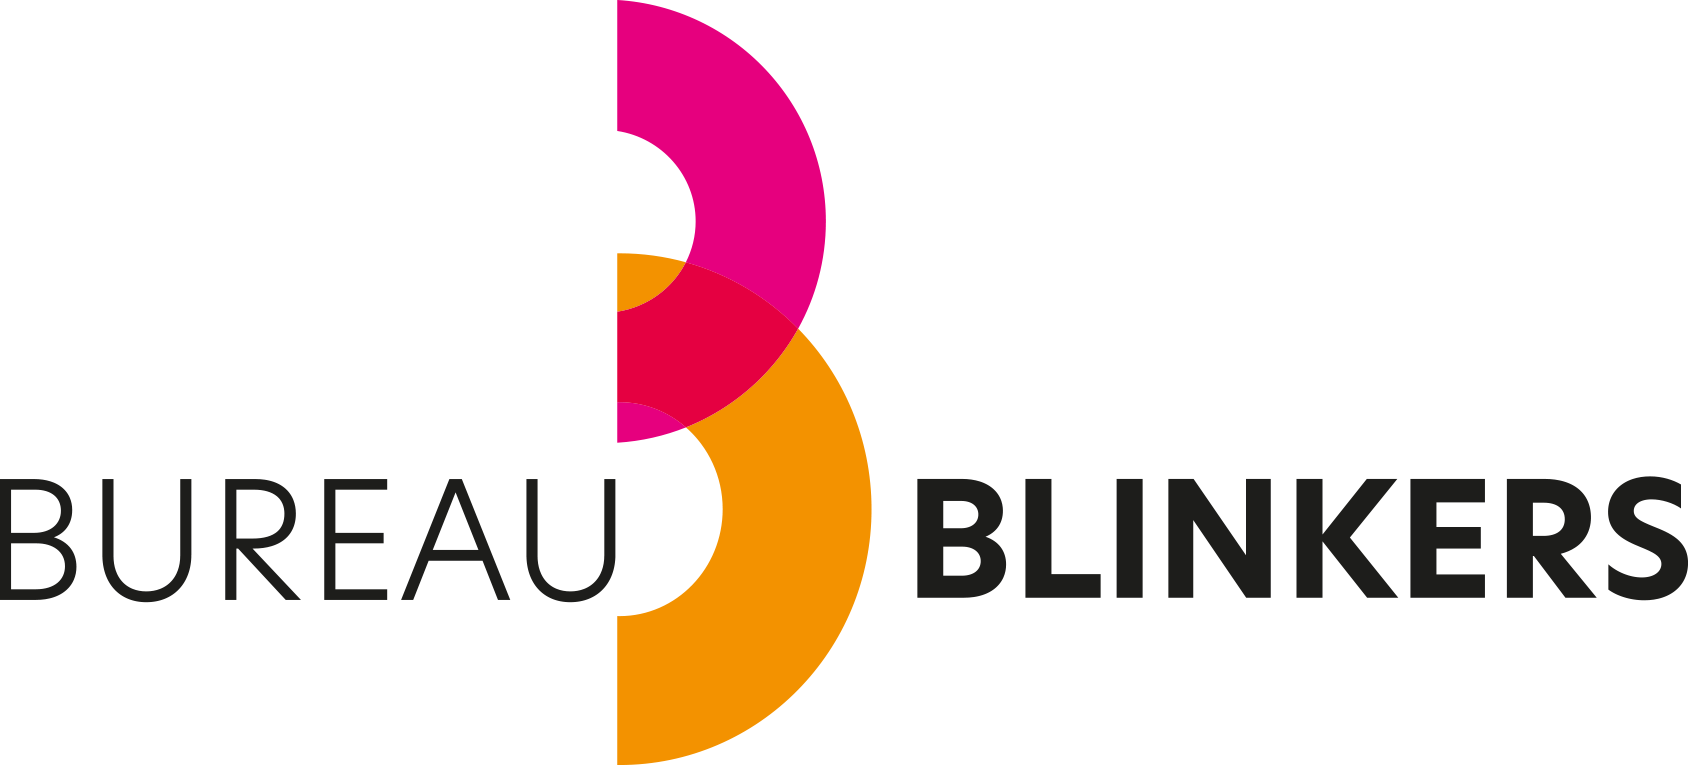 BB logo liggend rozeoranje fc